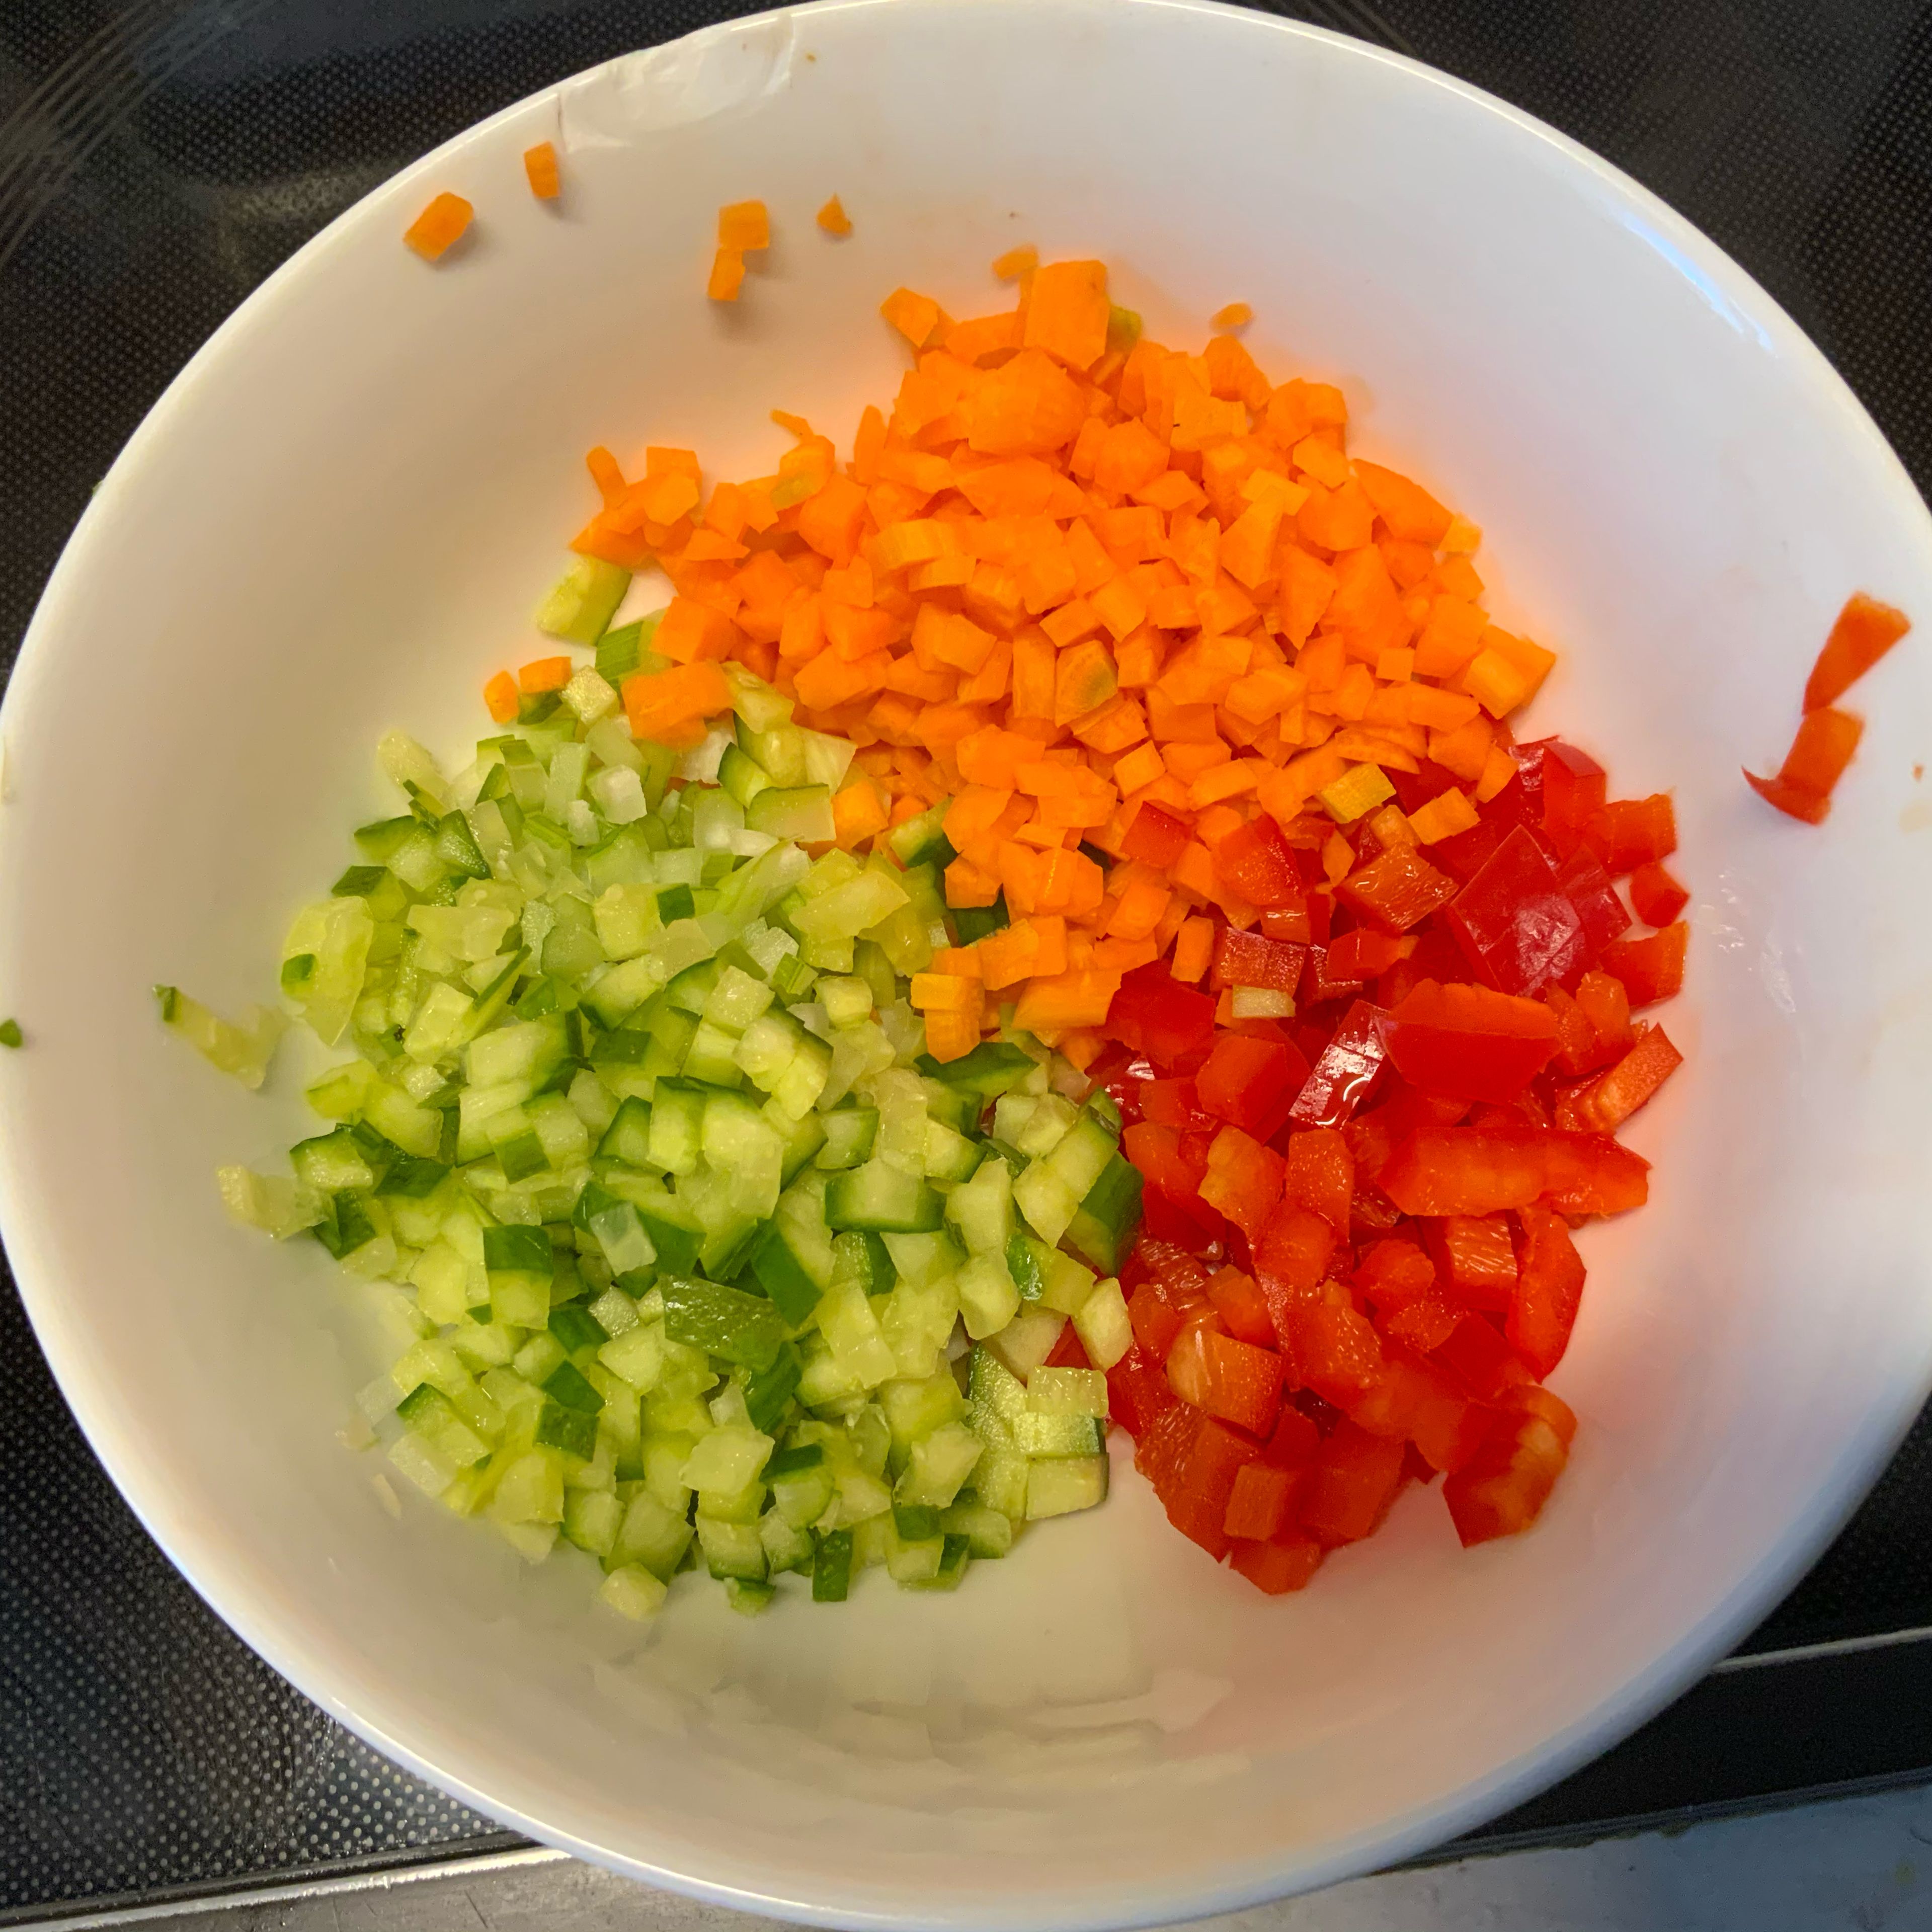 Das Gemüse-Couscous kann man entweder so zubereiten, dass man entweder das Couscous mit kochendem Wasser übergießt, ihn ca.10 Minuten quellen lässt und dann die 1/4 Karotte, den Teil roten Paprika und die viertel Stange Staudensellerie in den gequollenen Couscous rein raspelt oder vorher -wie hier- in klitzekleine Würfelchen schneidet und hinzufügt. Je nach Geschmack kann man diese Microwürfelchen ganz kurz andünsten oder wer’s wie ich knackig mag roh in den gequollenen Couscous untermischen.